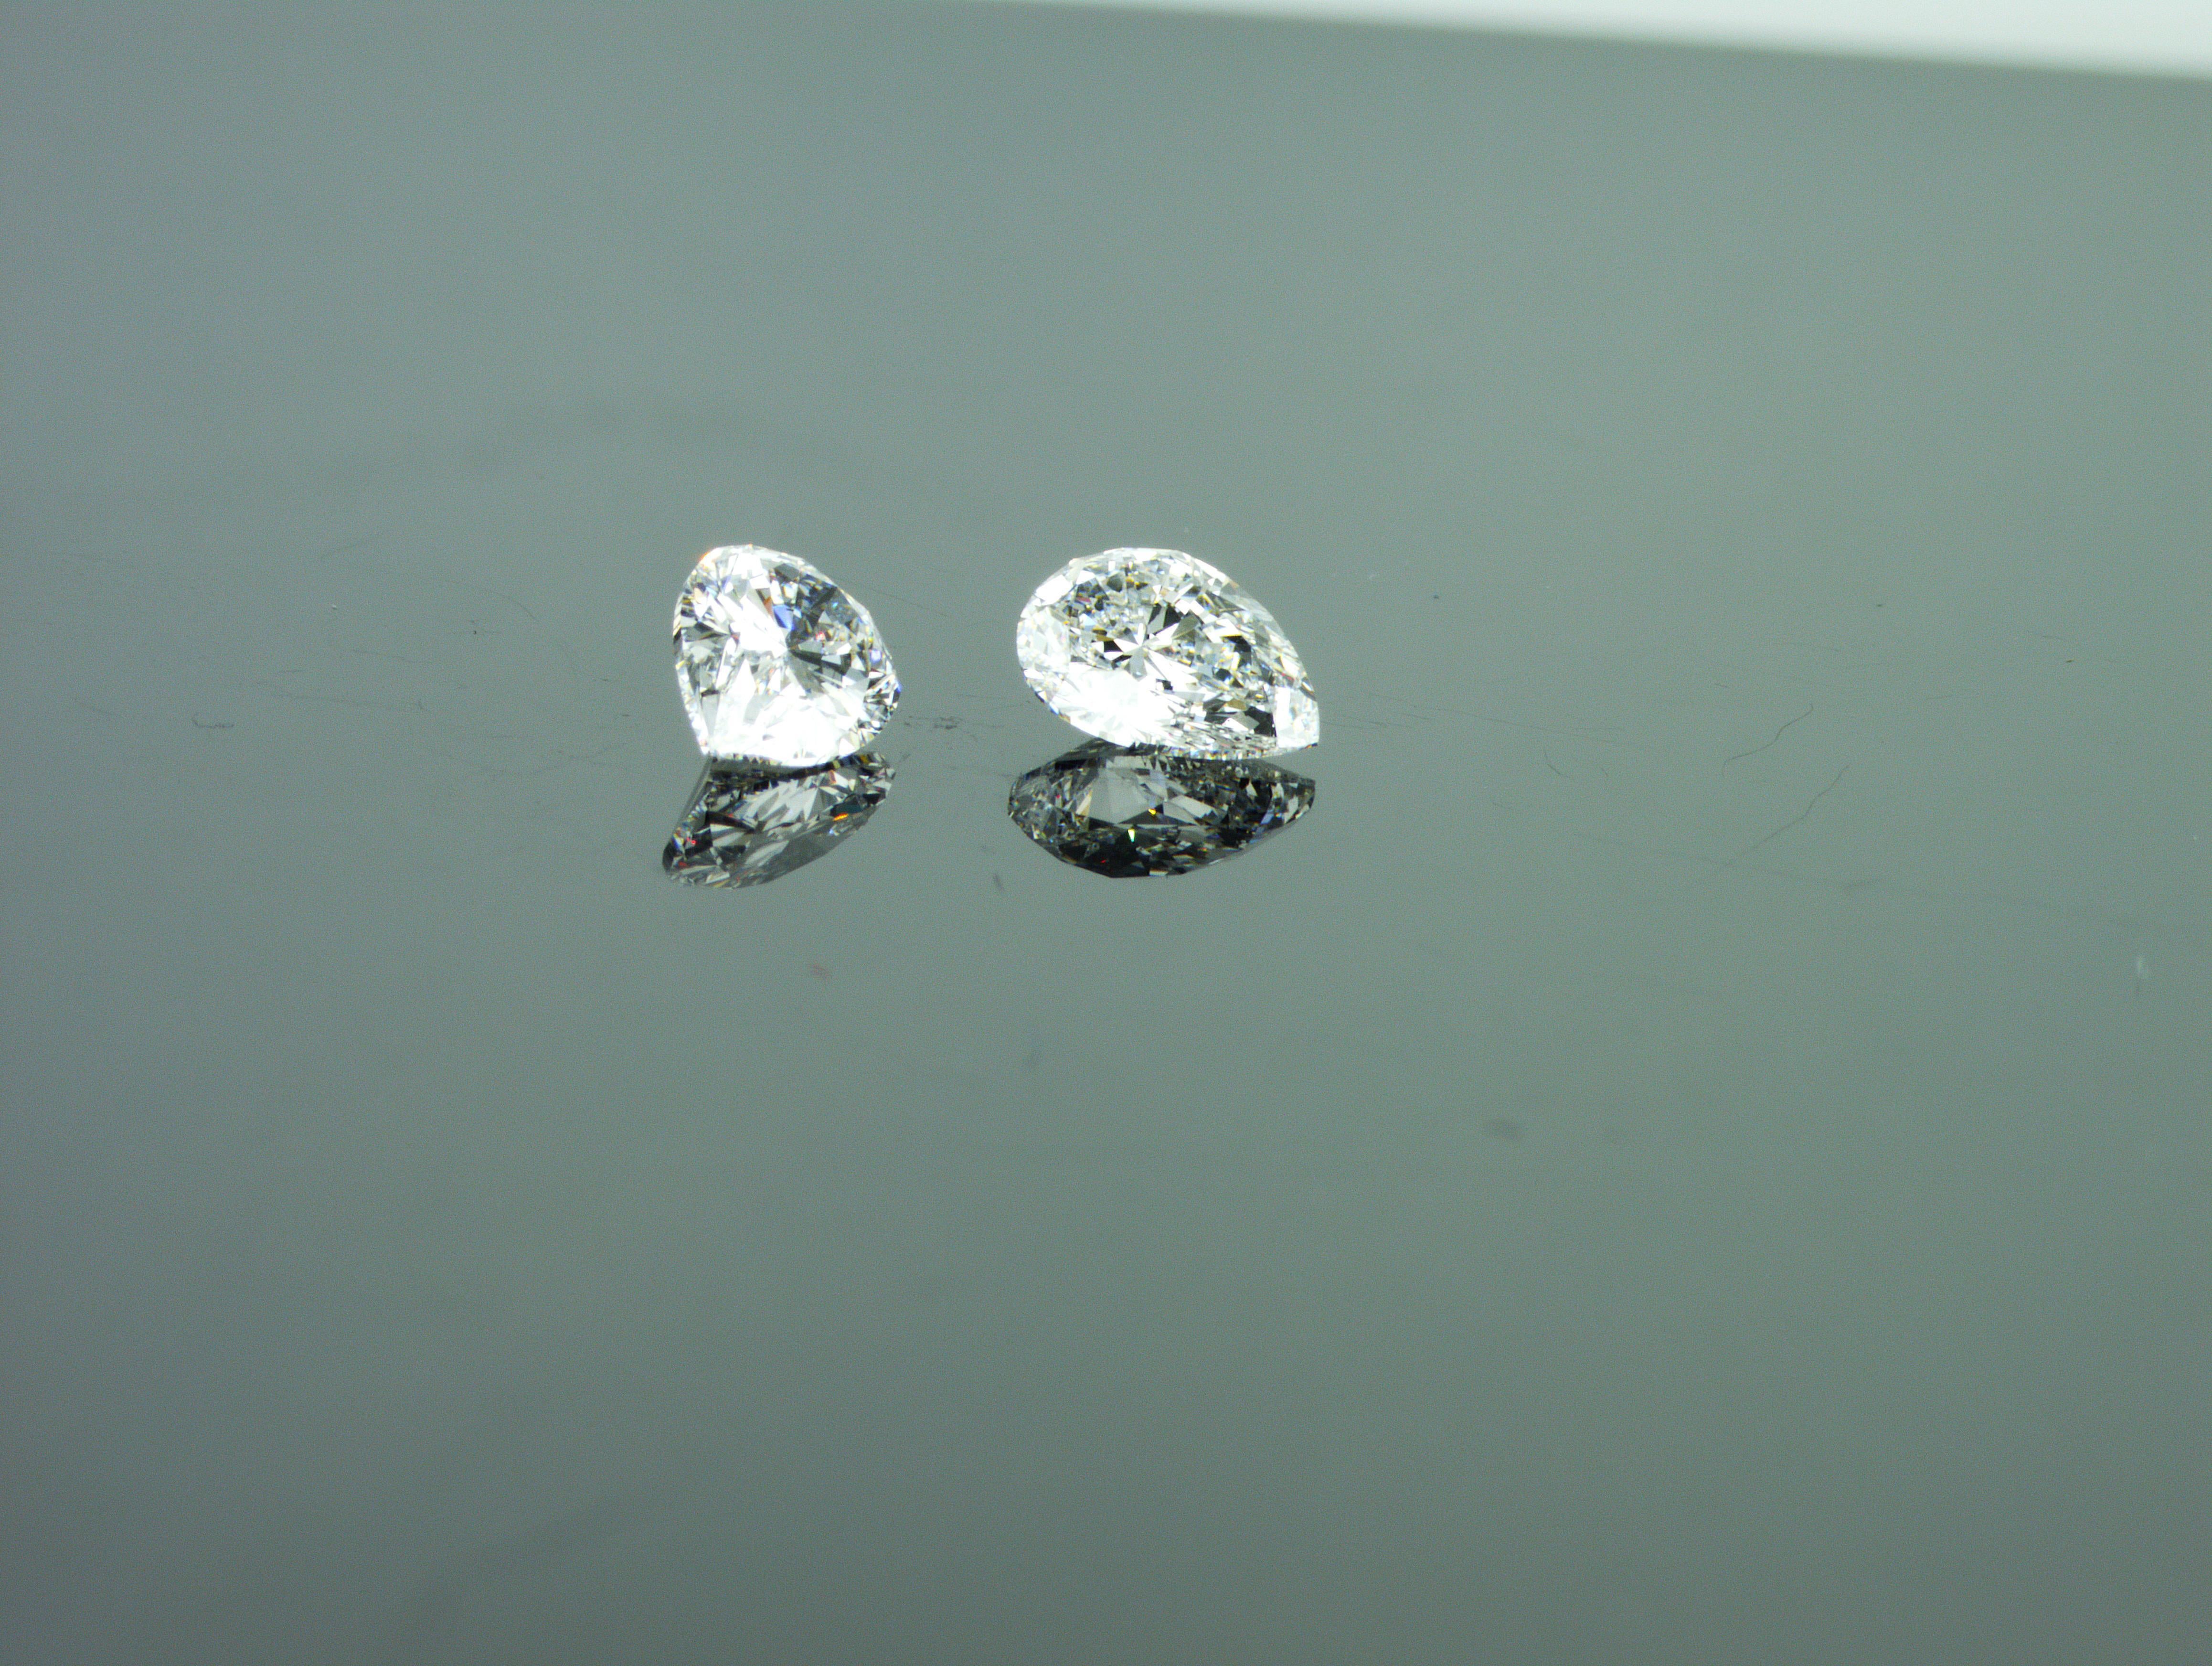 Wir sind ein Unternehmen für die Herstellung von Naturdiamanten mit Sitz in Dubai. Passendes Paar von 2 birnenförmigen natürlichen Diamanten
Birnenförmiger natürlicher Diamant 1:
Gewicht: 0,71 ct
Die Form: Birne
Farbe: außergewöhnlich weiß +